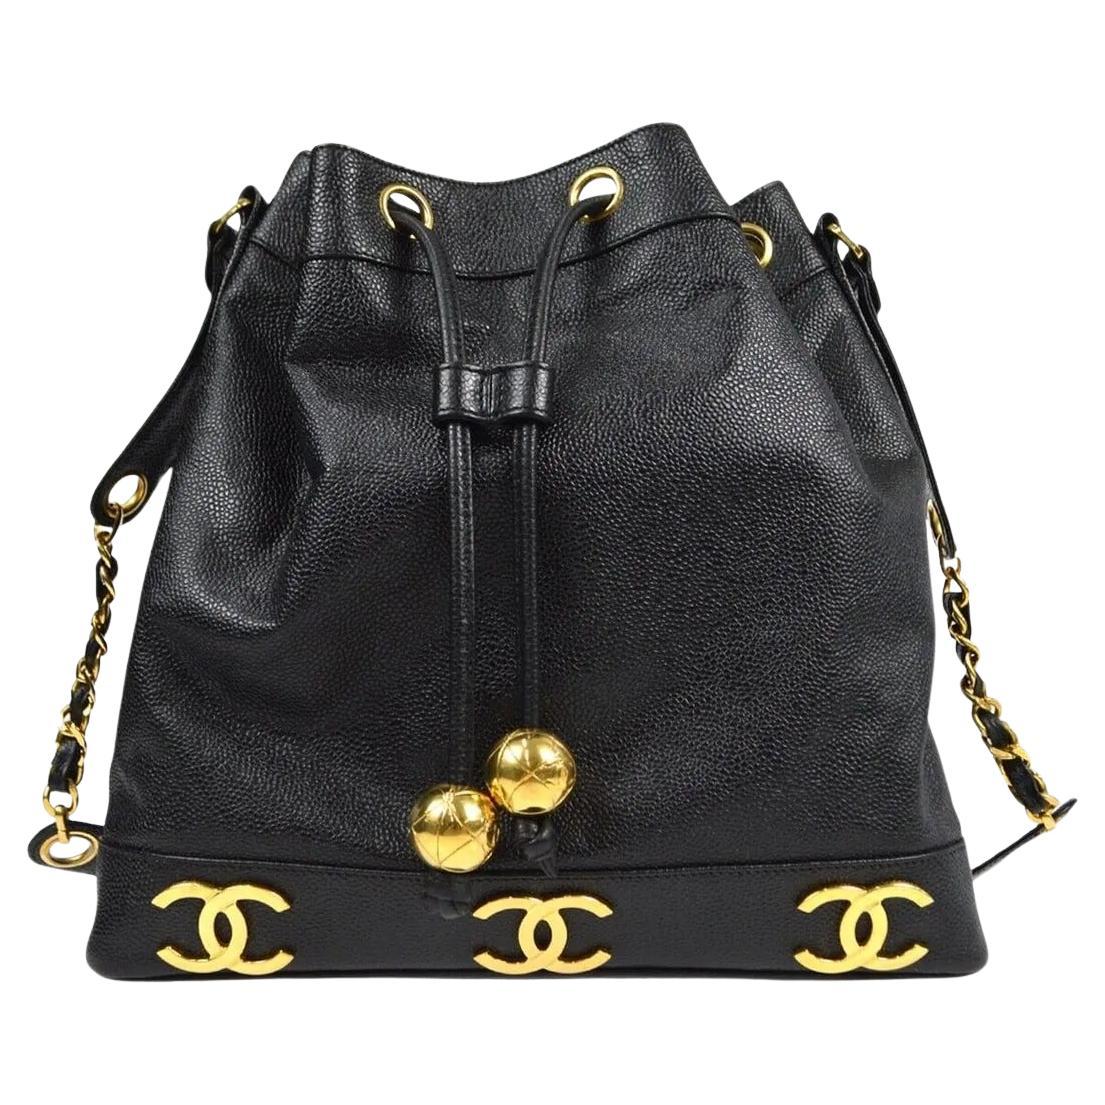 Chanel Six CC Caviar Leather Draw String Pendant Shoulder bag/ Backpack.
Magnifique sac en cuir Caviar avec des accents dorés. 
Le cuir caviar est en excellent état. Le cordon de serrage est fabriqué dans le même cuir et s'étend autour du haut du